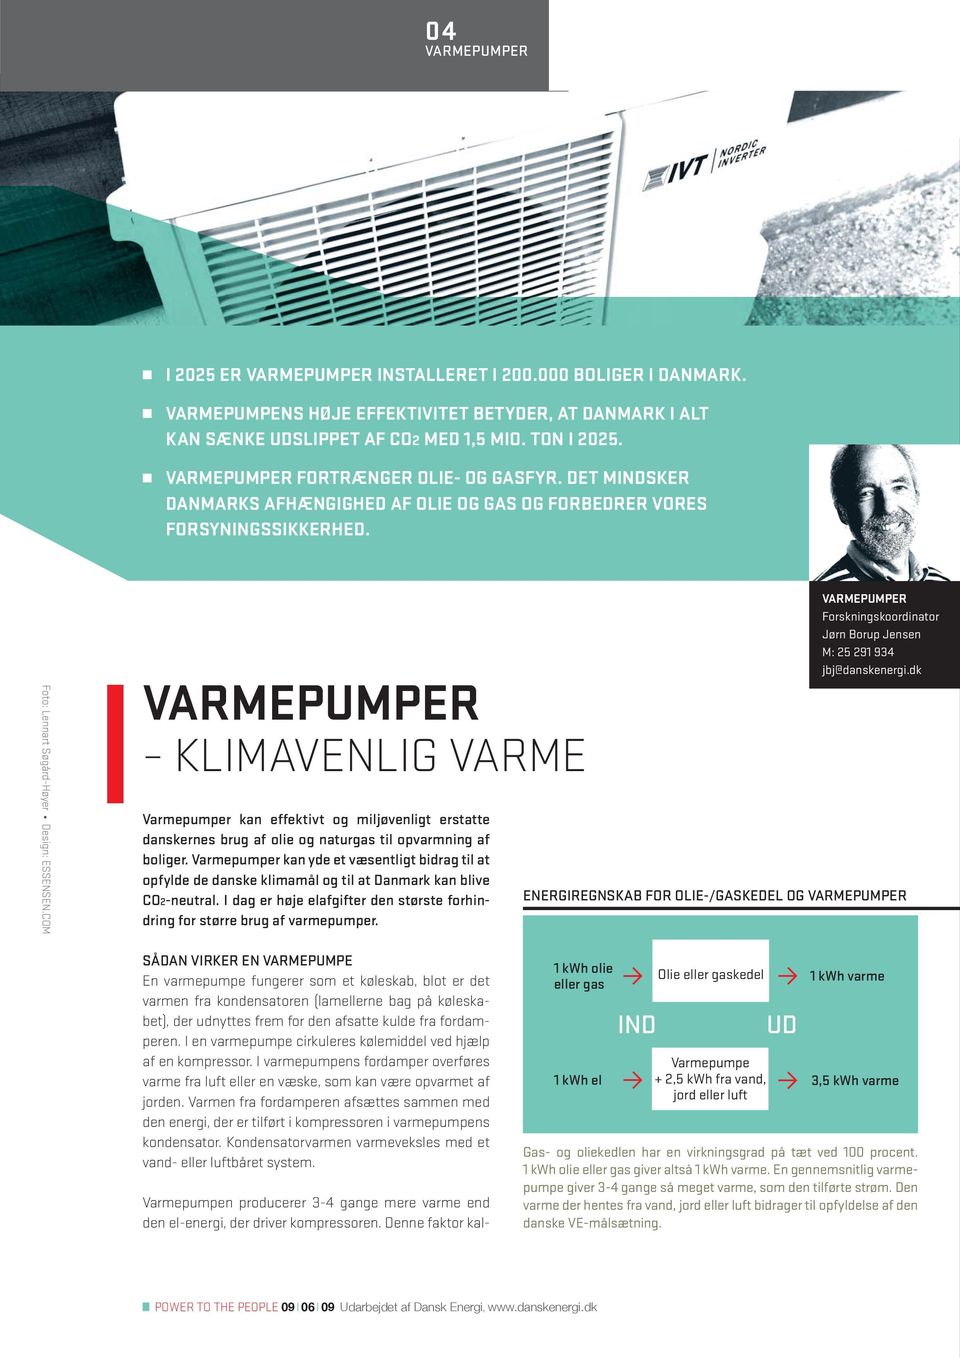 COM VARMEPUMPER KLIMAVENLIG VARME Varmepumper kan effektivt og miljøvenligt erstatte danskernes brug af olie og naturgas til opvarmning af boliger.